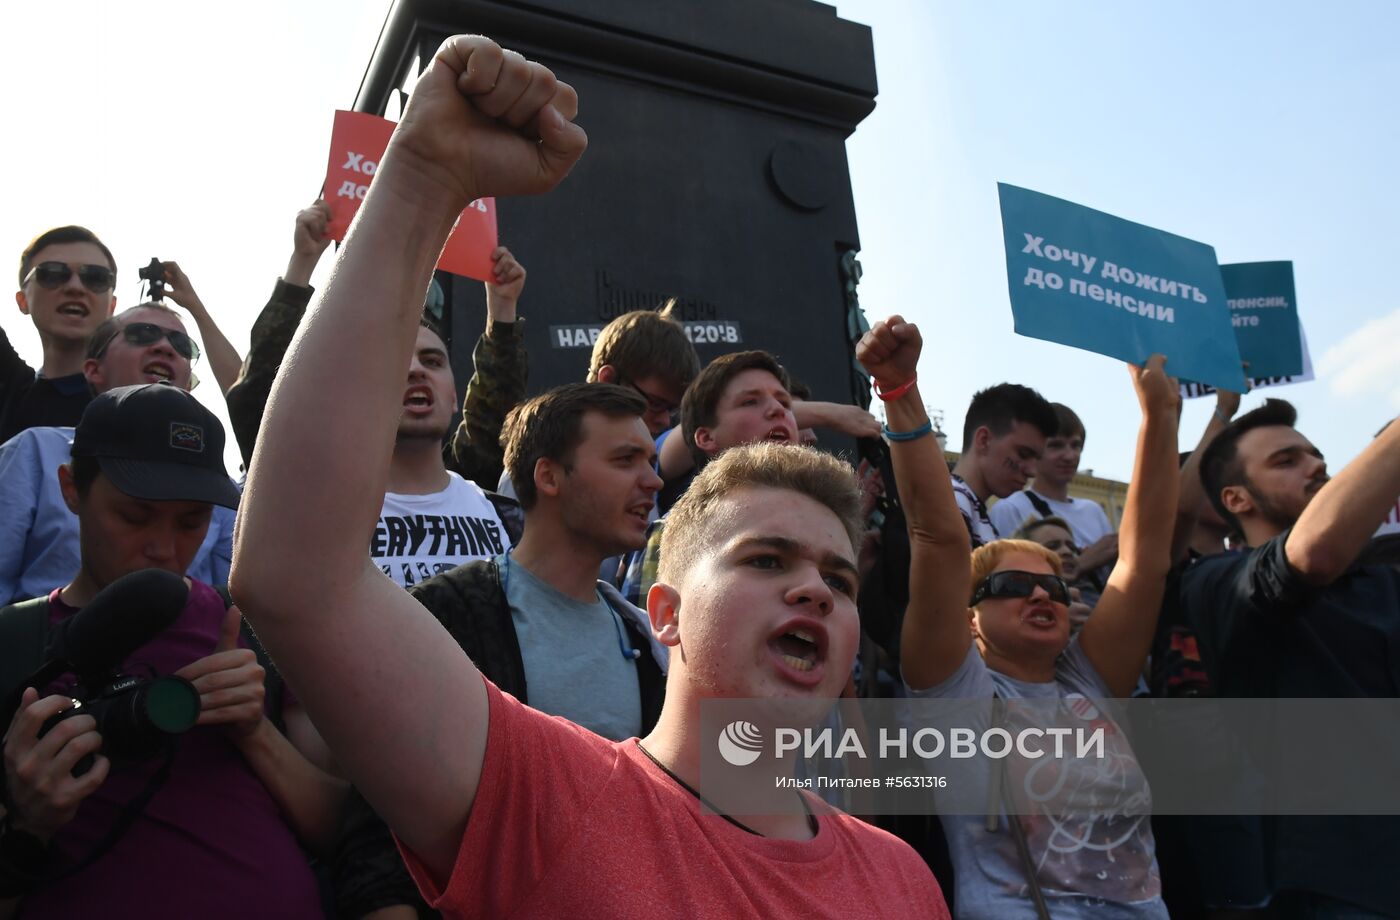 Митинги против пенсионной реформы в России